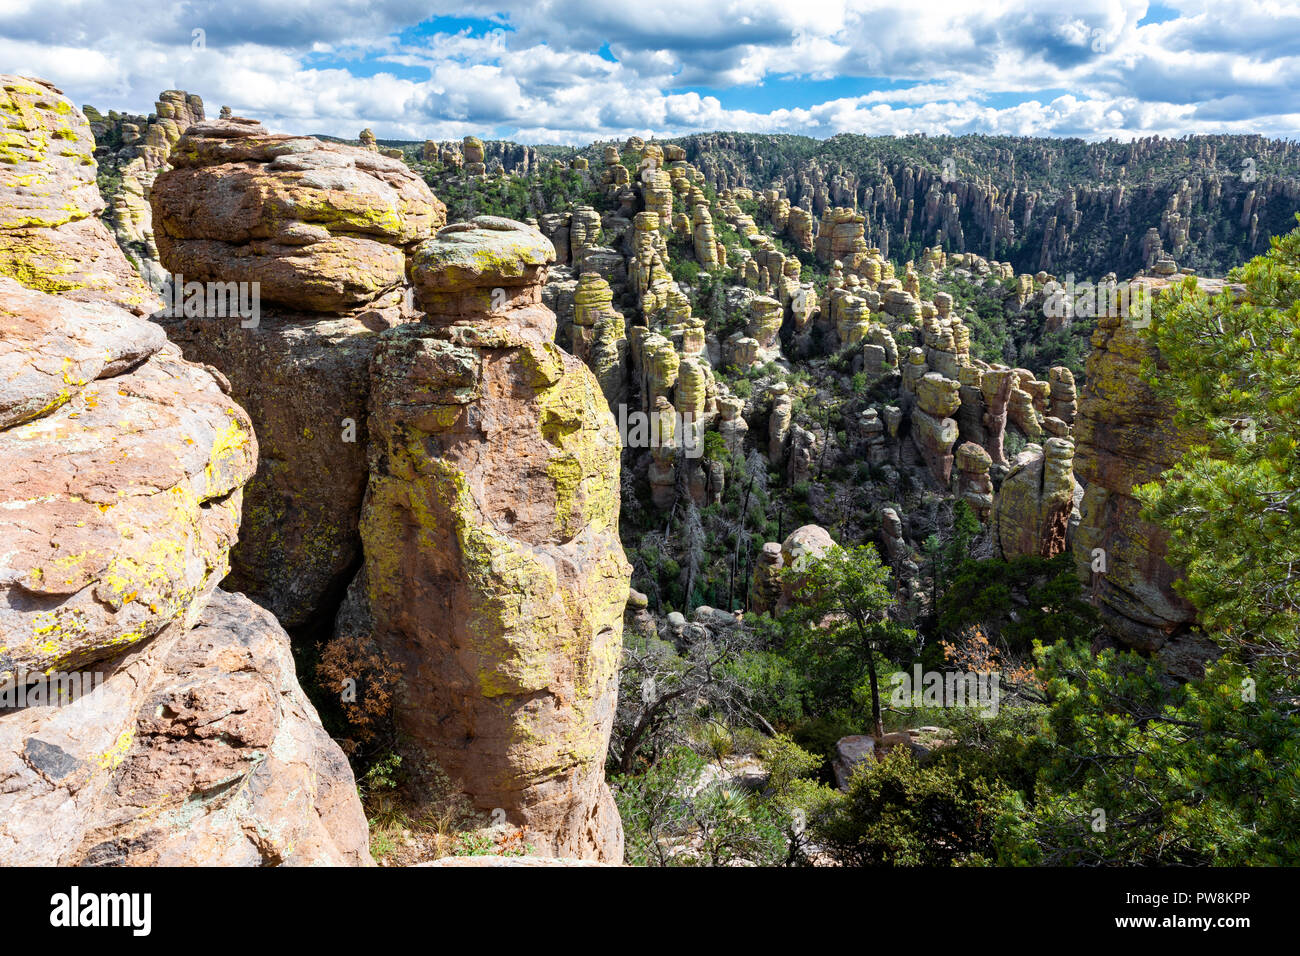 Rhyolite hoodoos, Chiricahua National Monument, Arizona Stock Photo